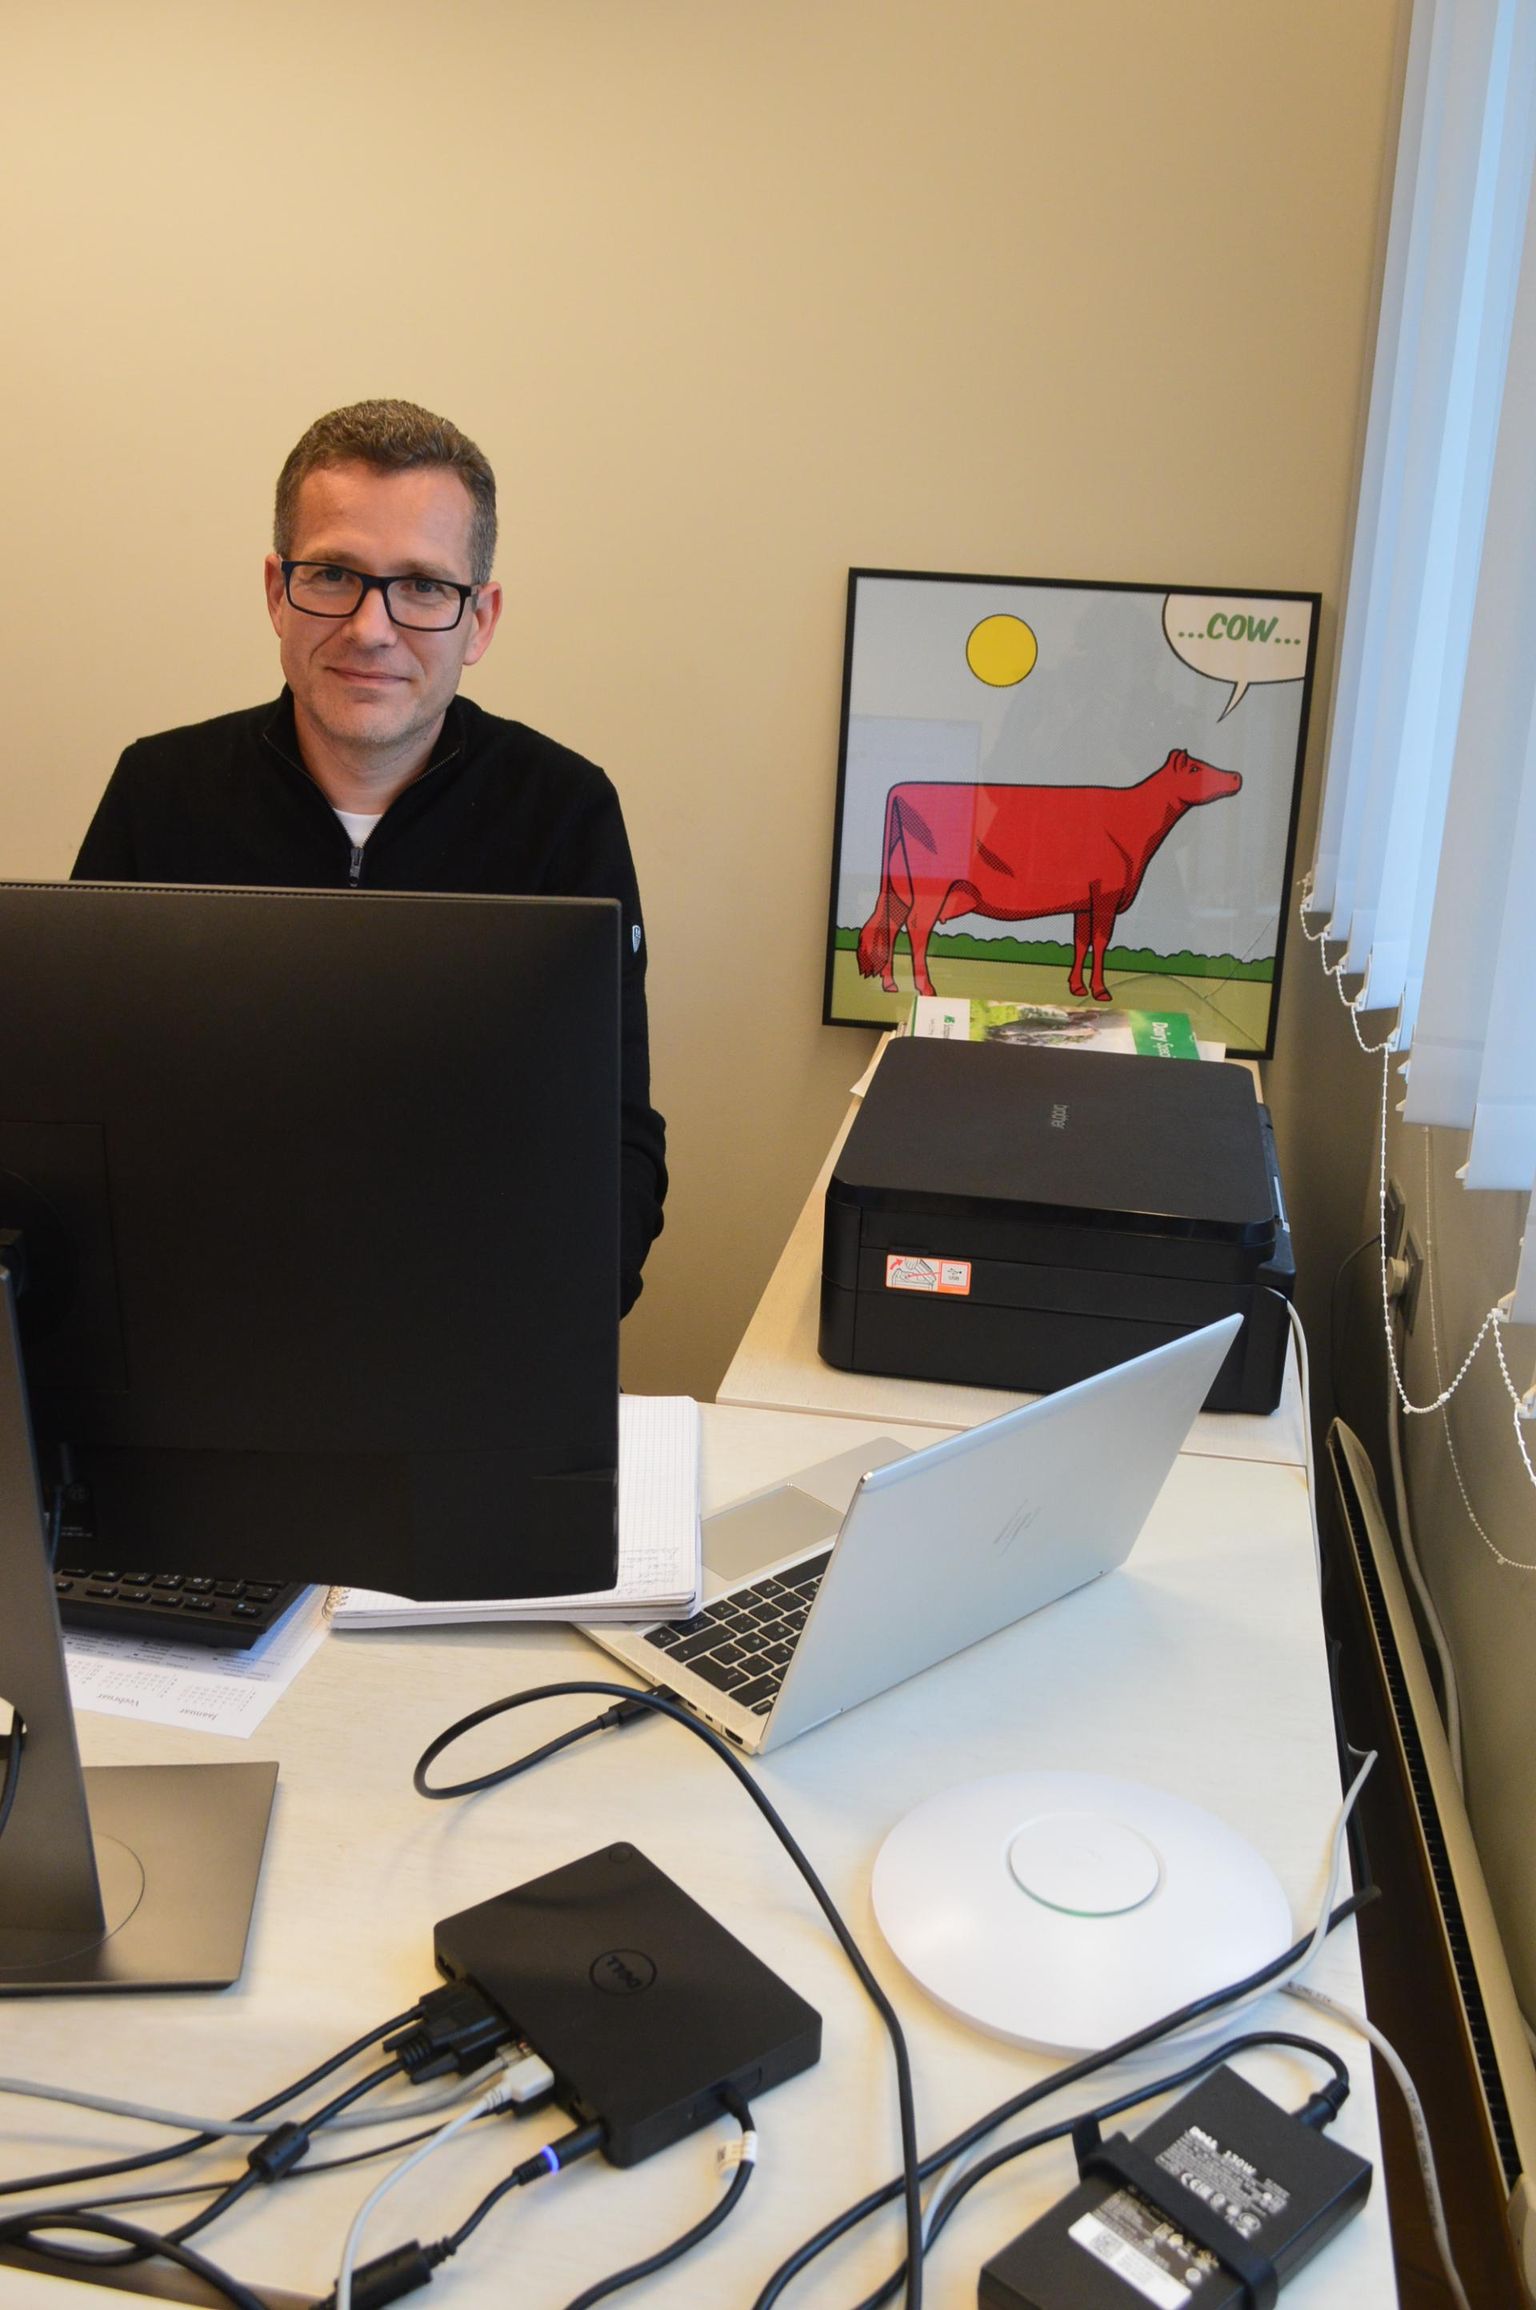 Vaklak OÜ tegevjuht Margus Muld veedab tööpäevad Mäo kontoris Sämmi Grilli maja teisel korrusel, sest juhtimine eeldab põhjalikke analüüse Exceli tabelites.